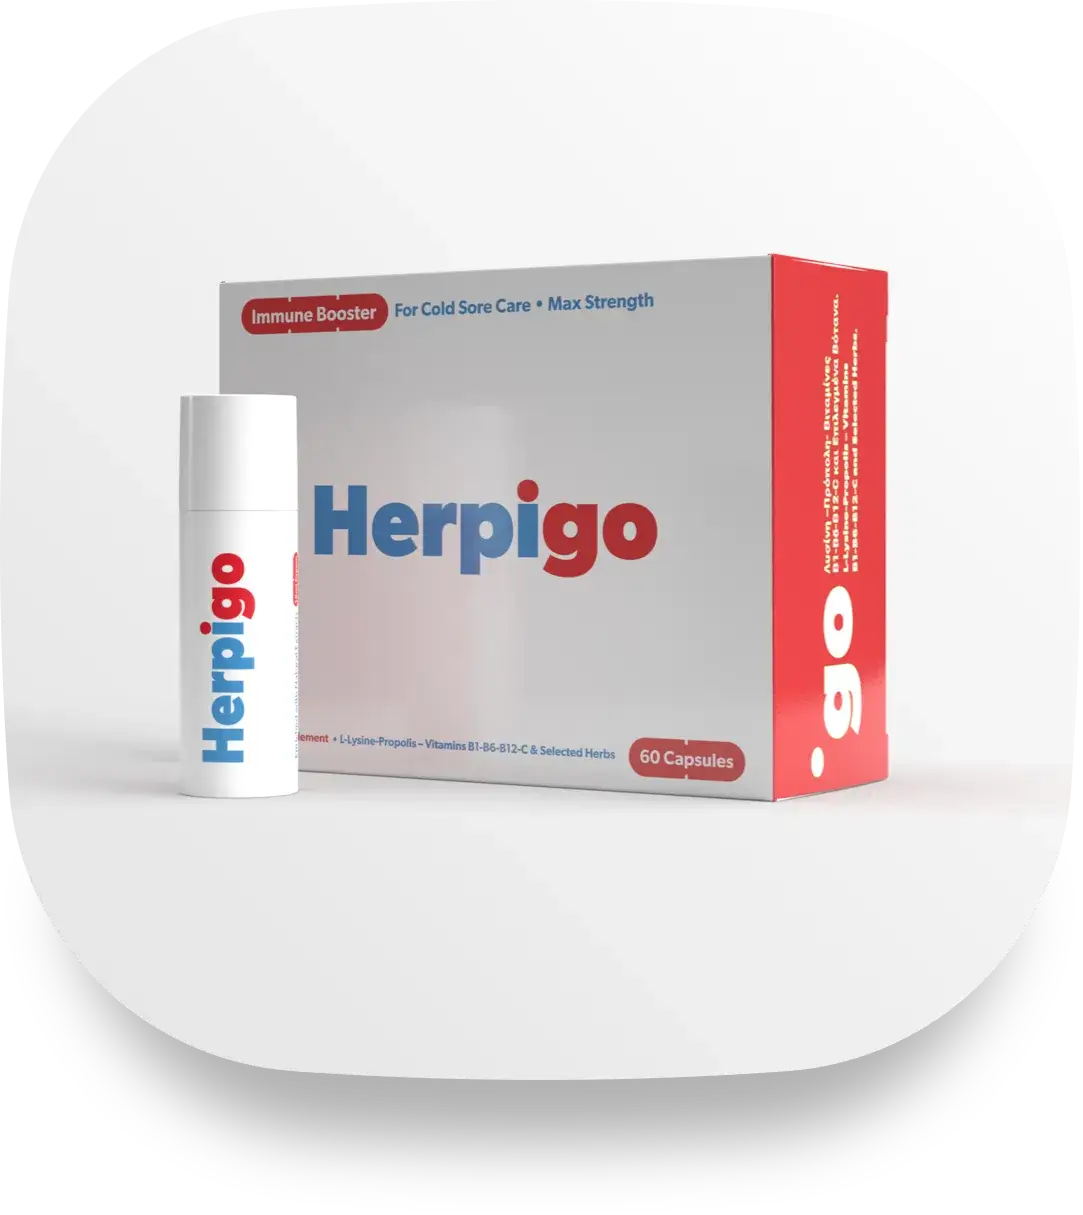 Herpigo Products